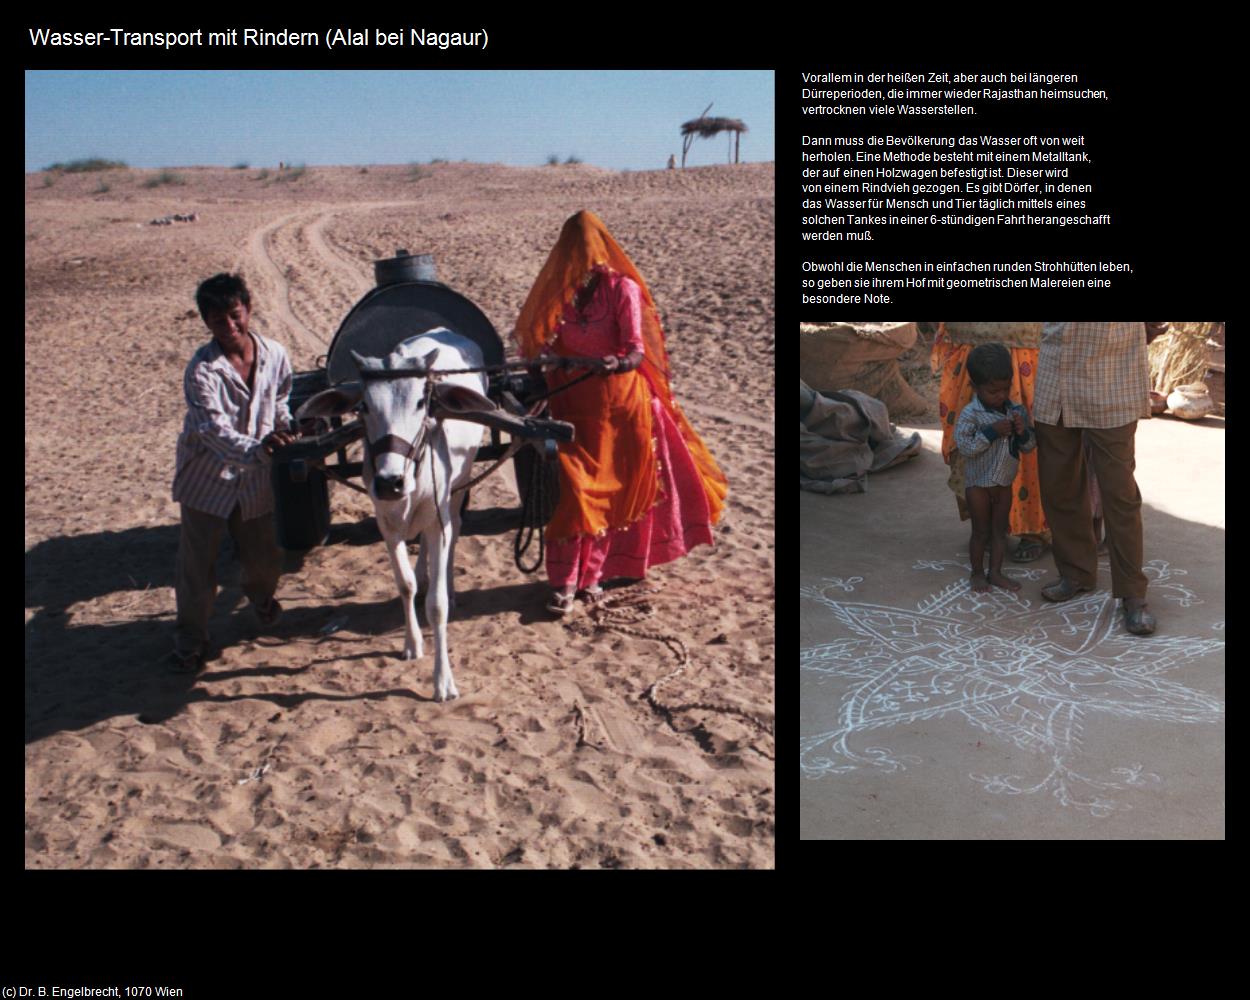 Wasser-Transport (Alal) (Nagaur) in Rajasthan - das Land der Könige